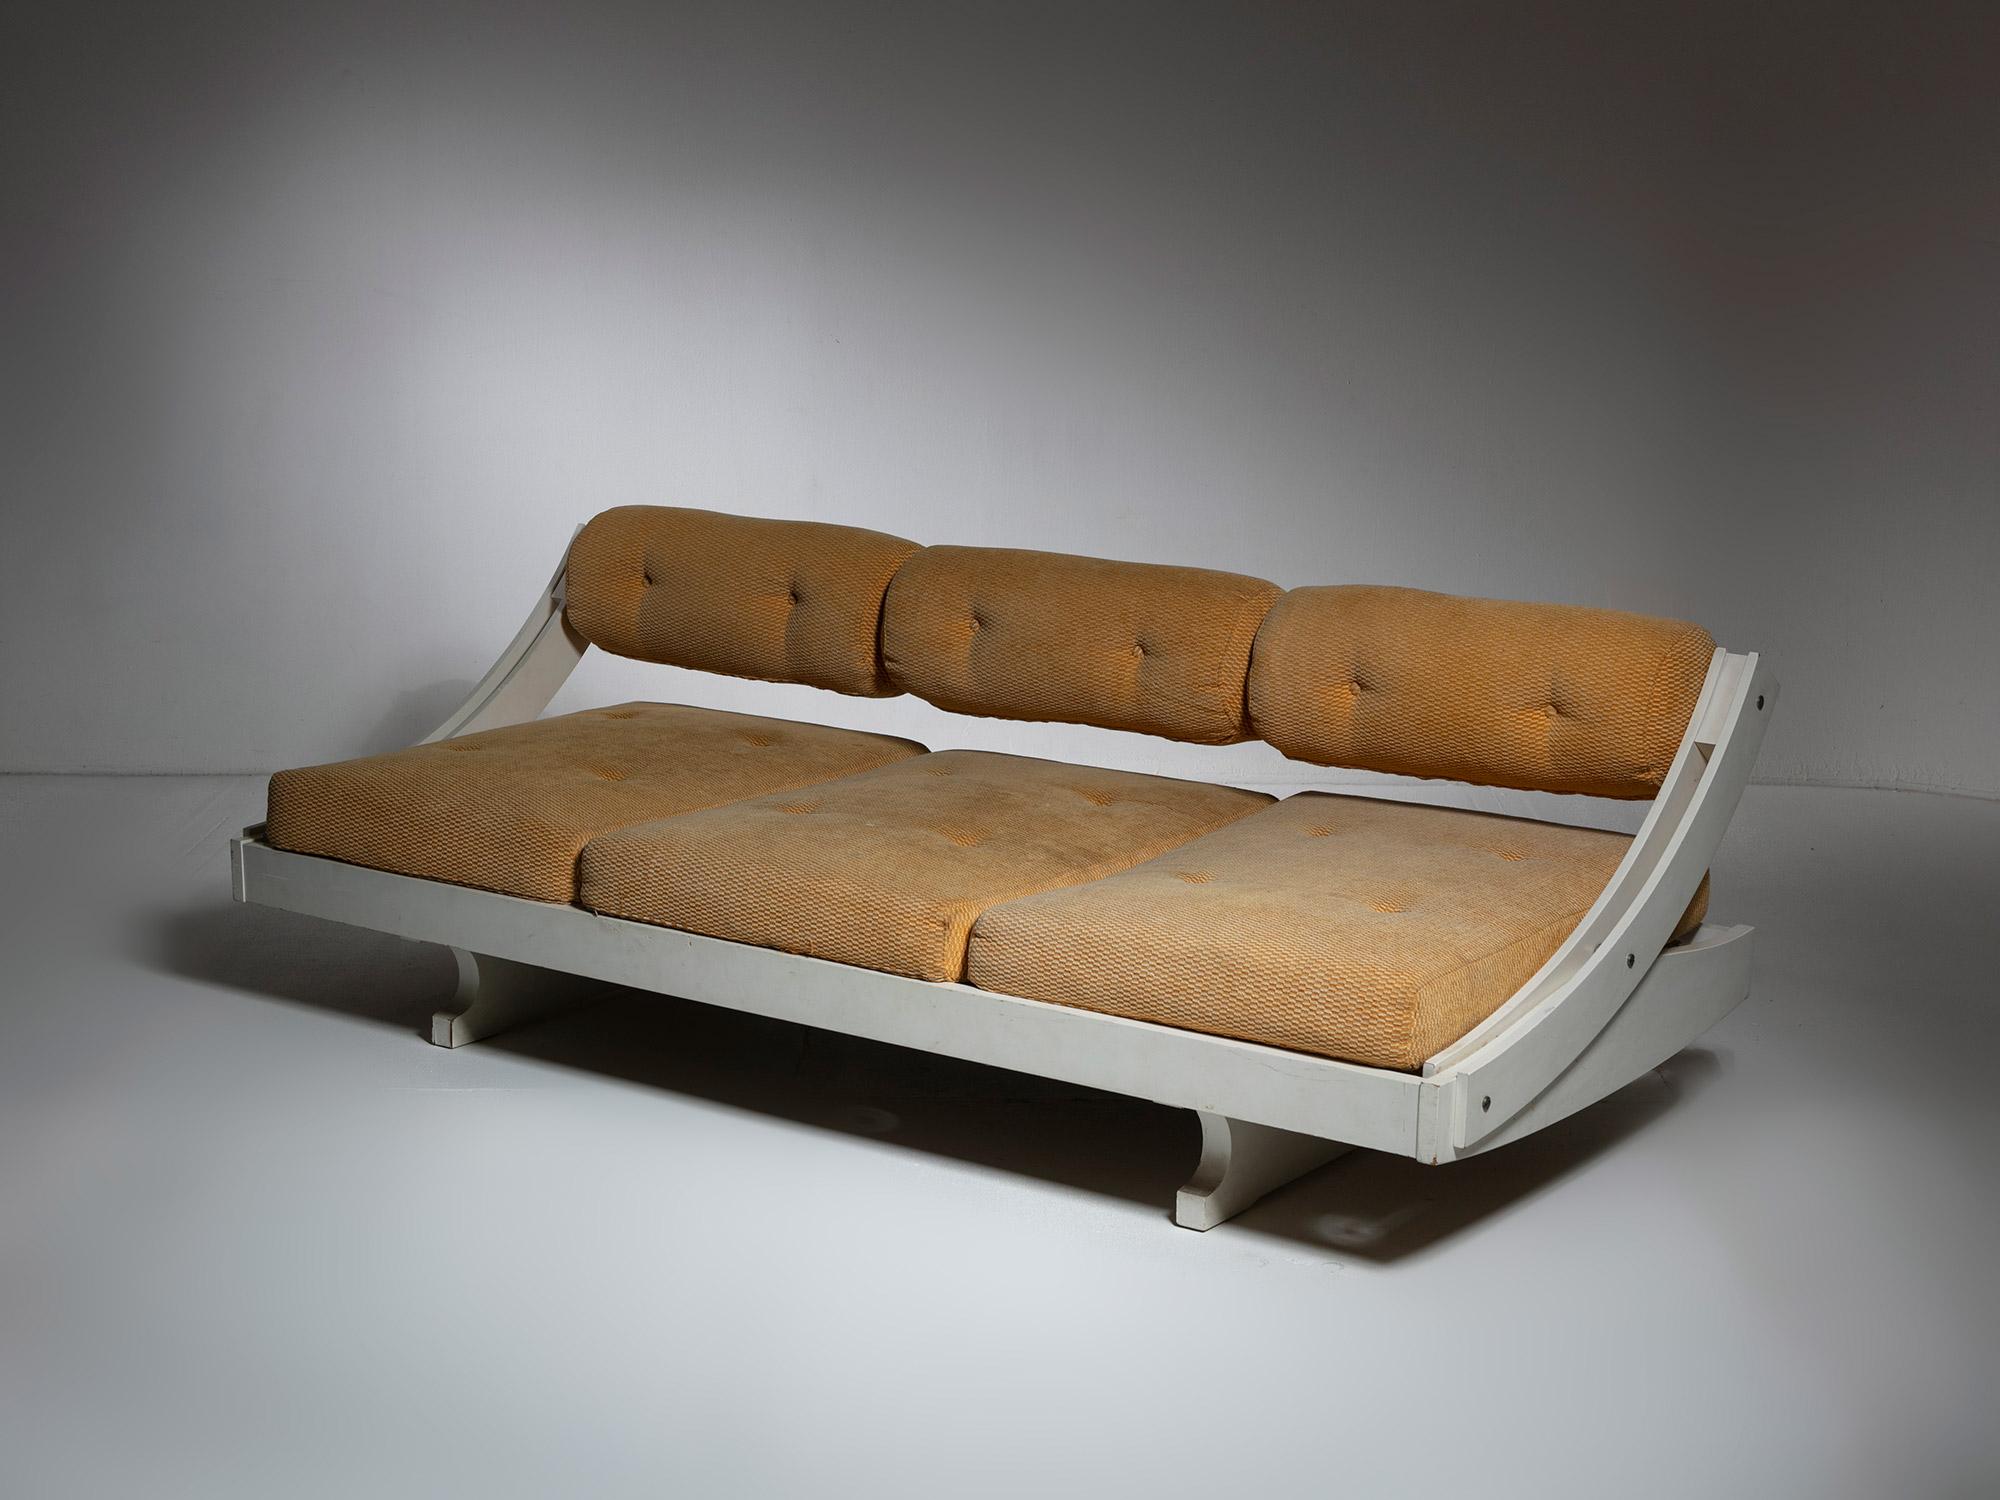 Seltenes weißes Tagesbett von Gianni Songia für Sormani.
Die verschiebbare Rückenlehne ermöglicht die Umwandlung in ein bequemes Einzelbett.